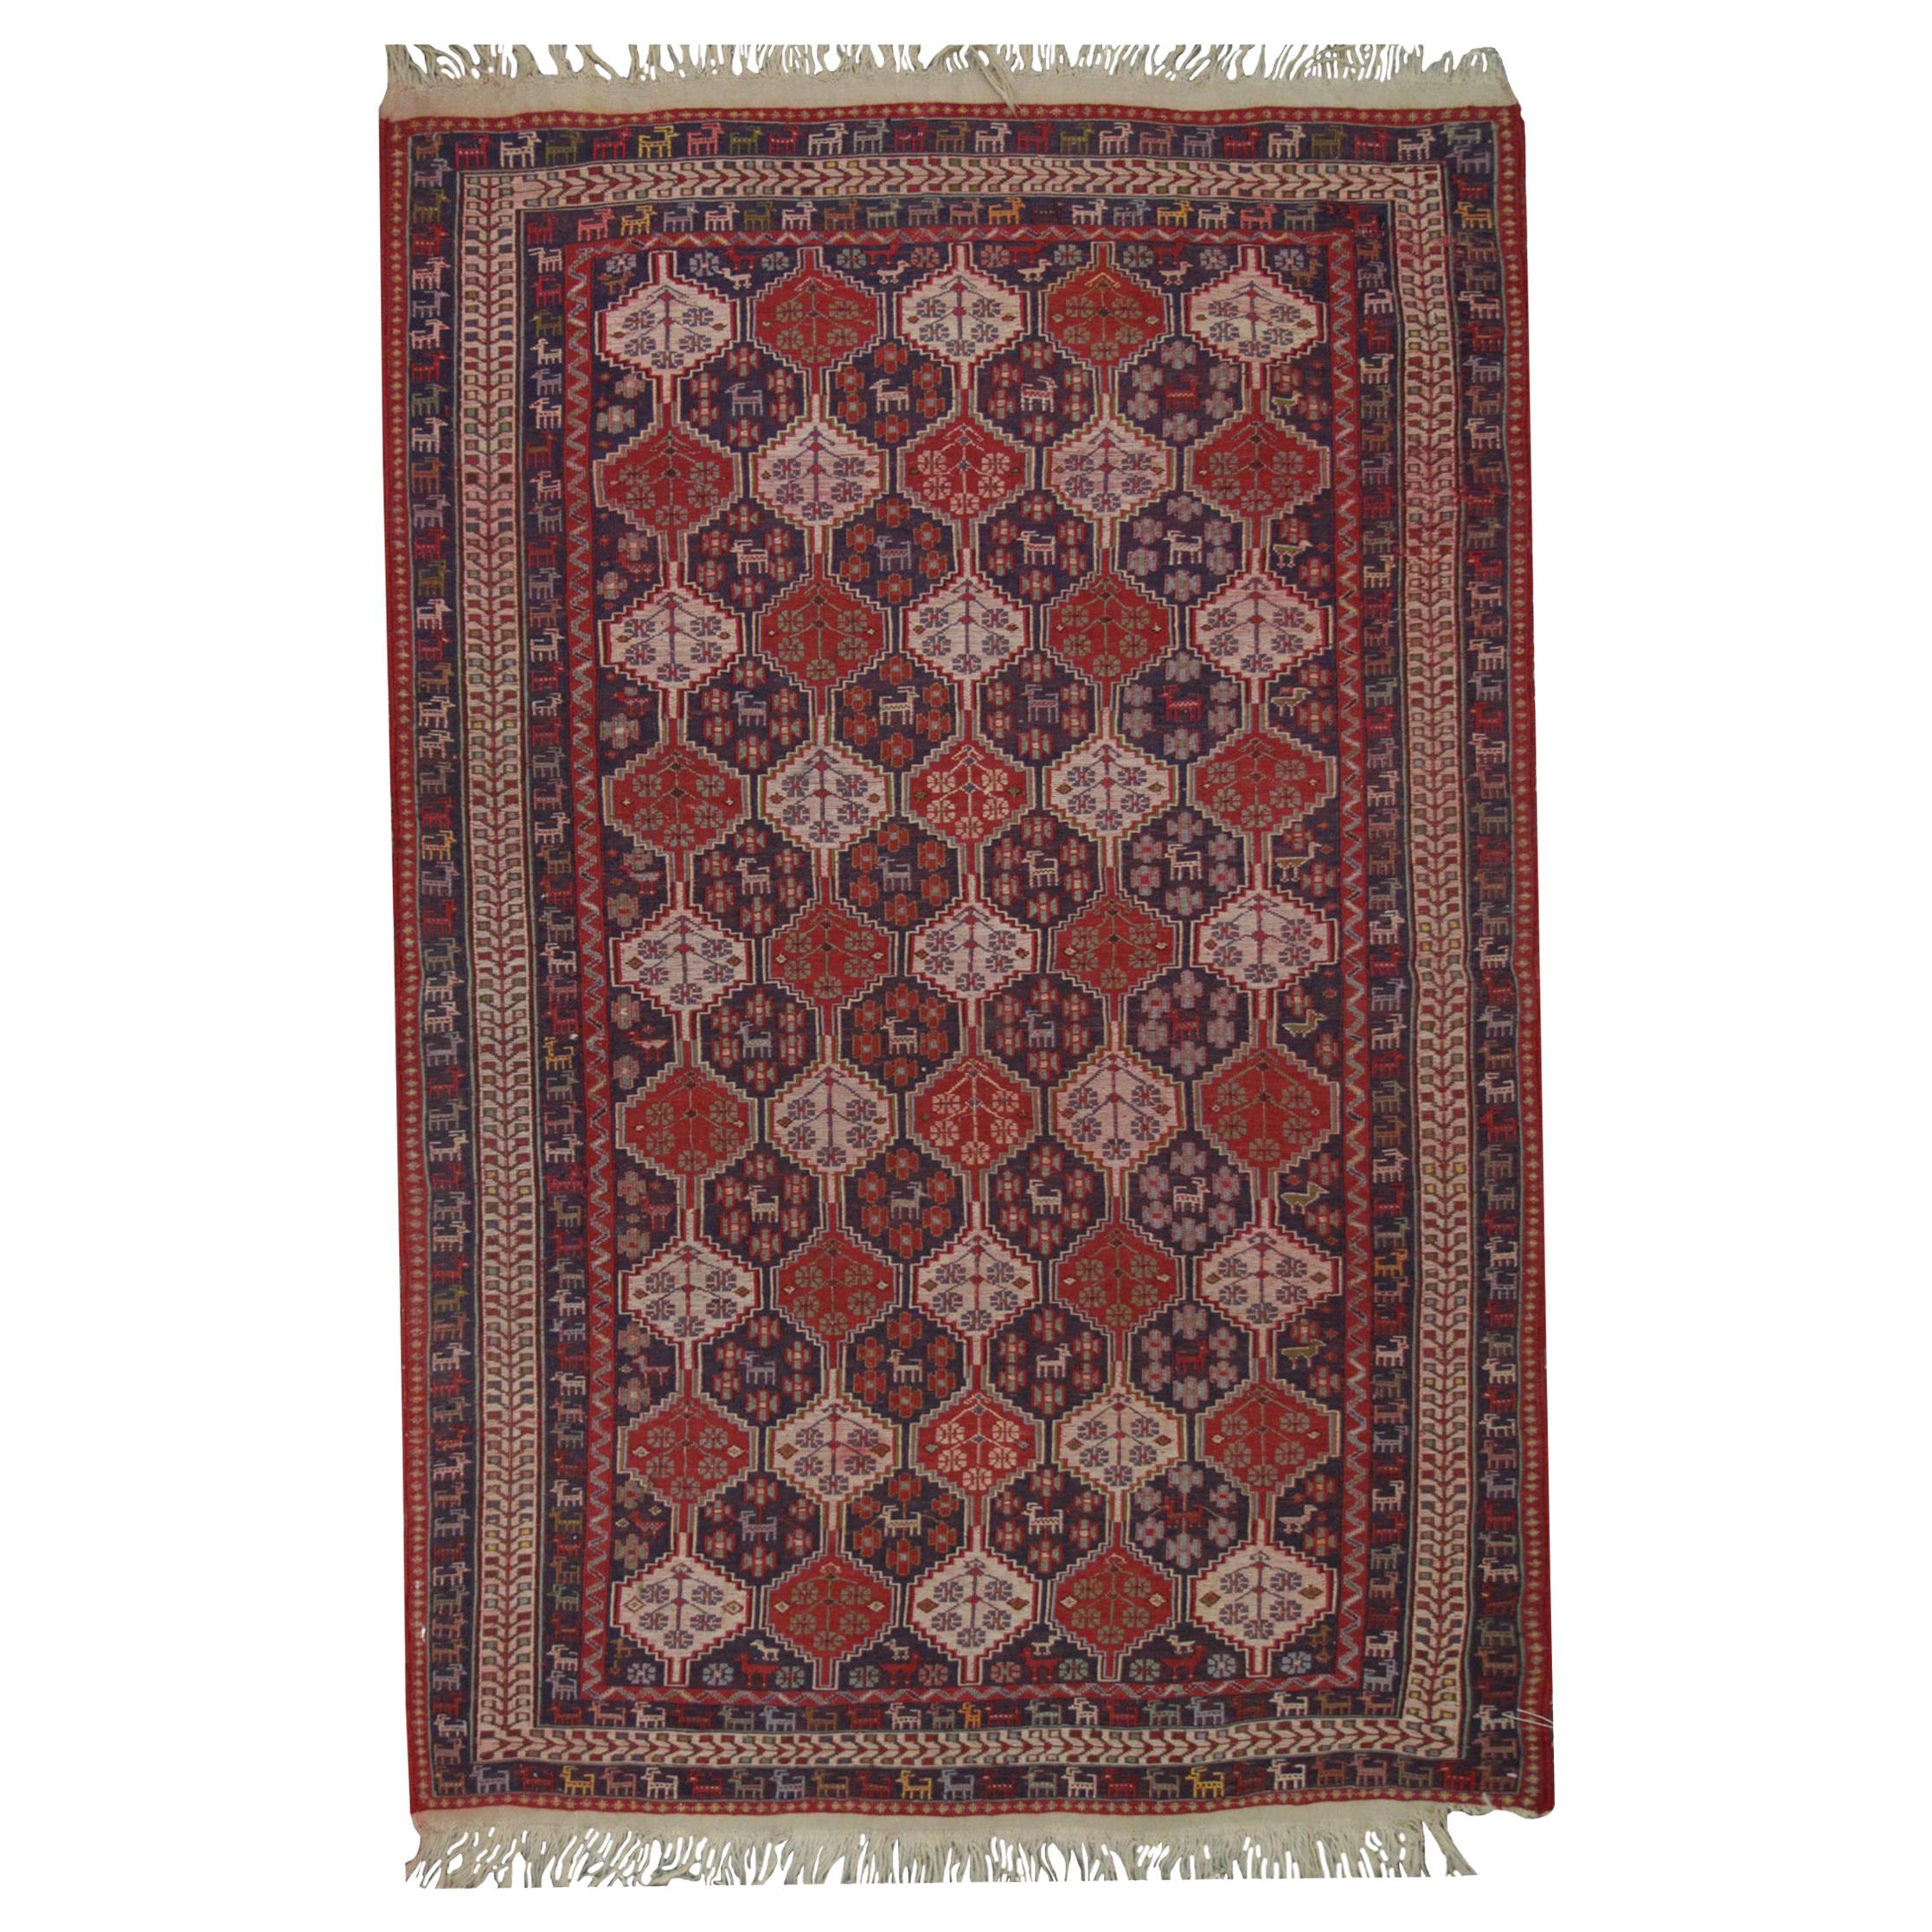 Handgewebter Kilims Orientalischer Teppich, traditioneller Teppich aus roter Sumach-Kelim-Wolle